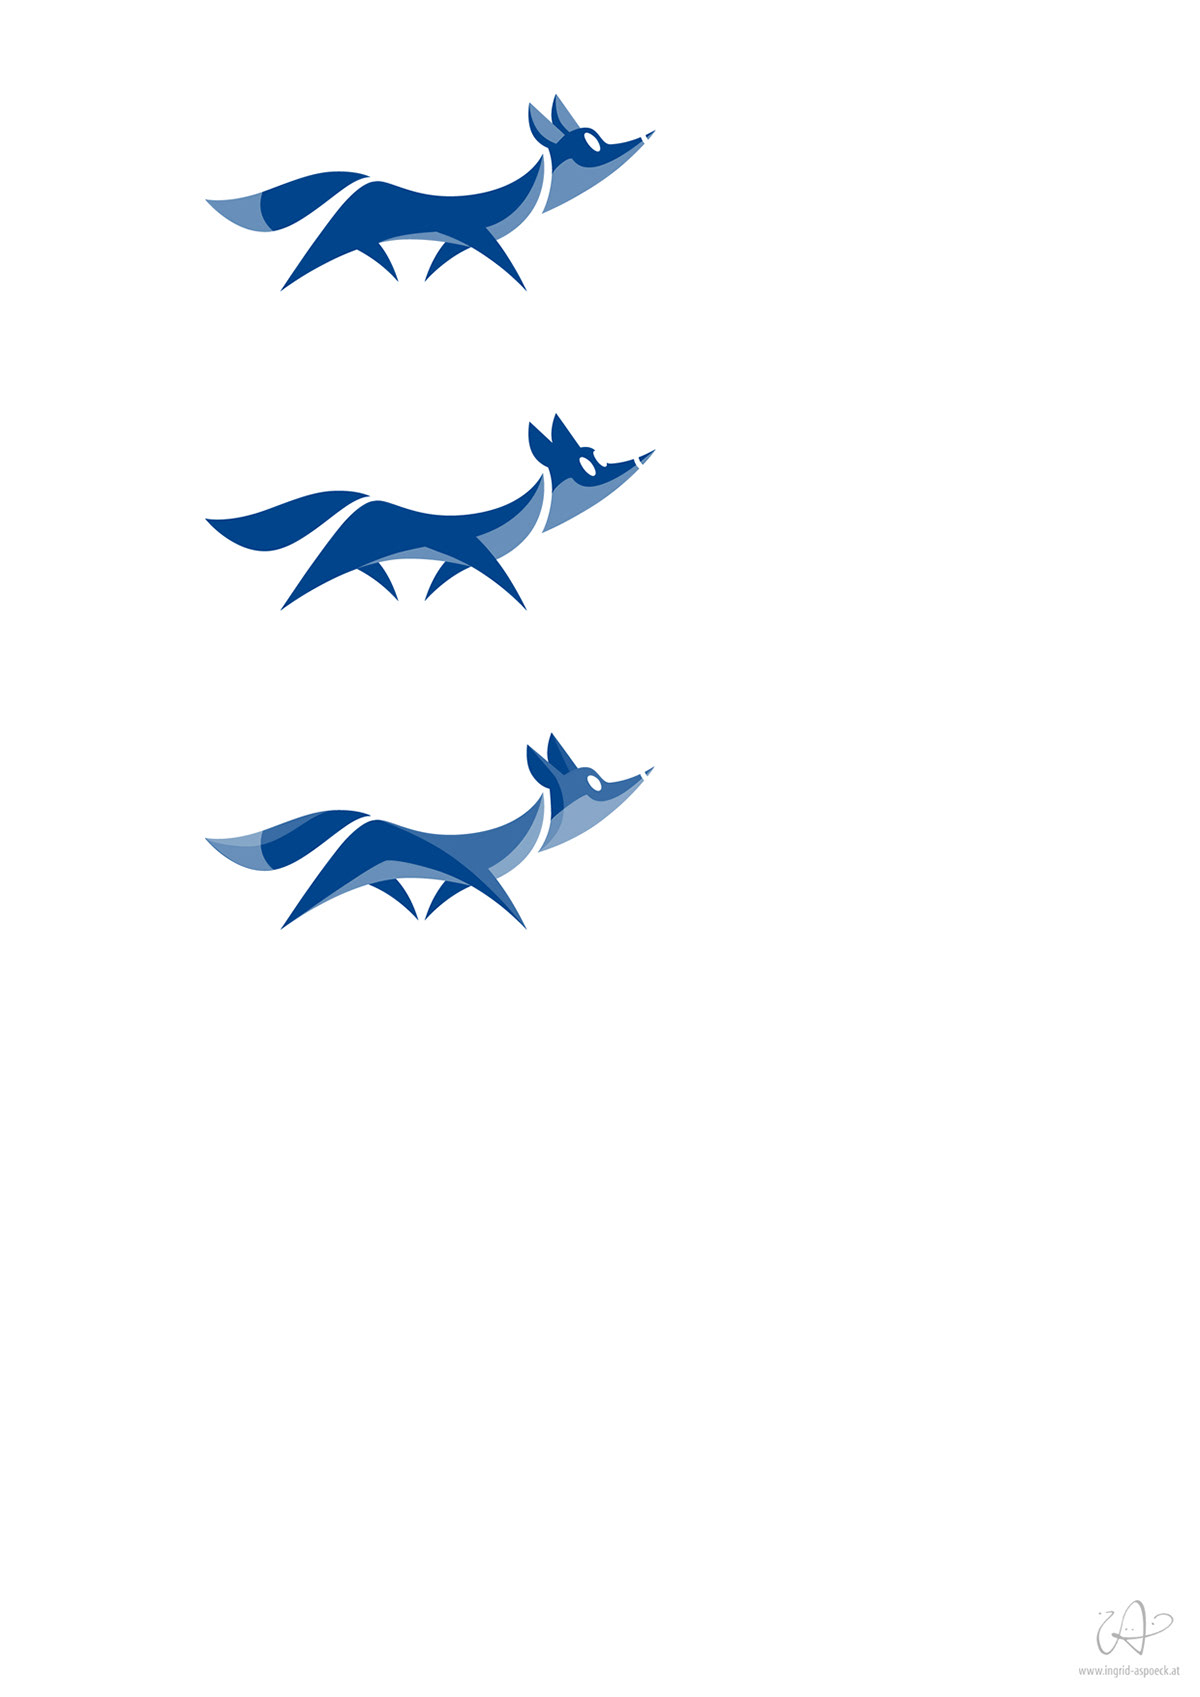 FOX logo vector design